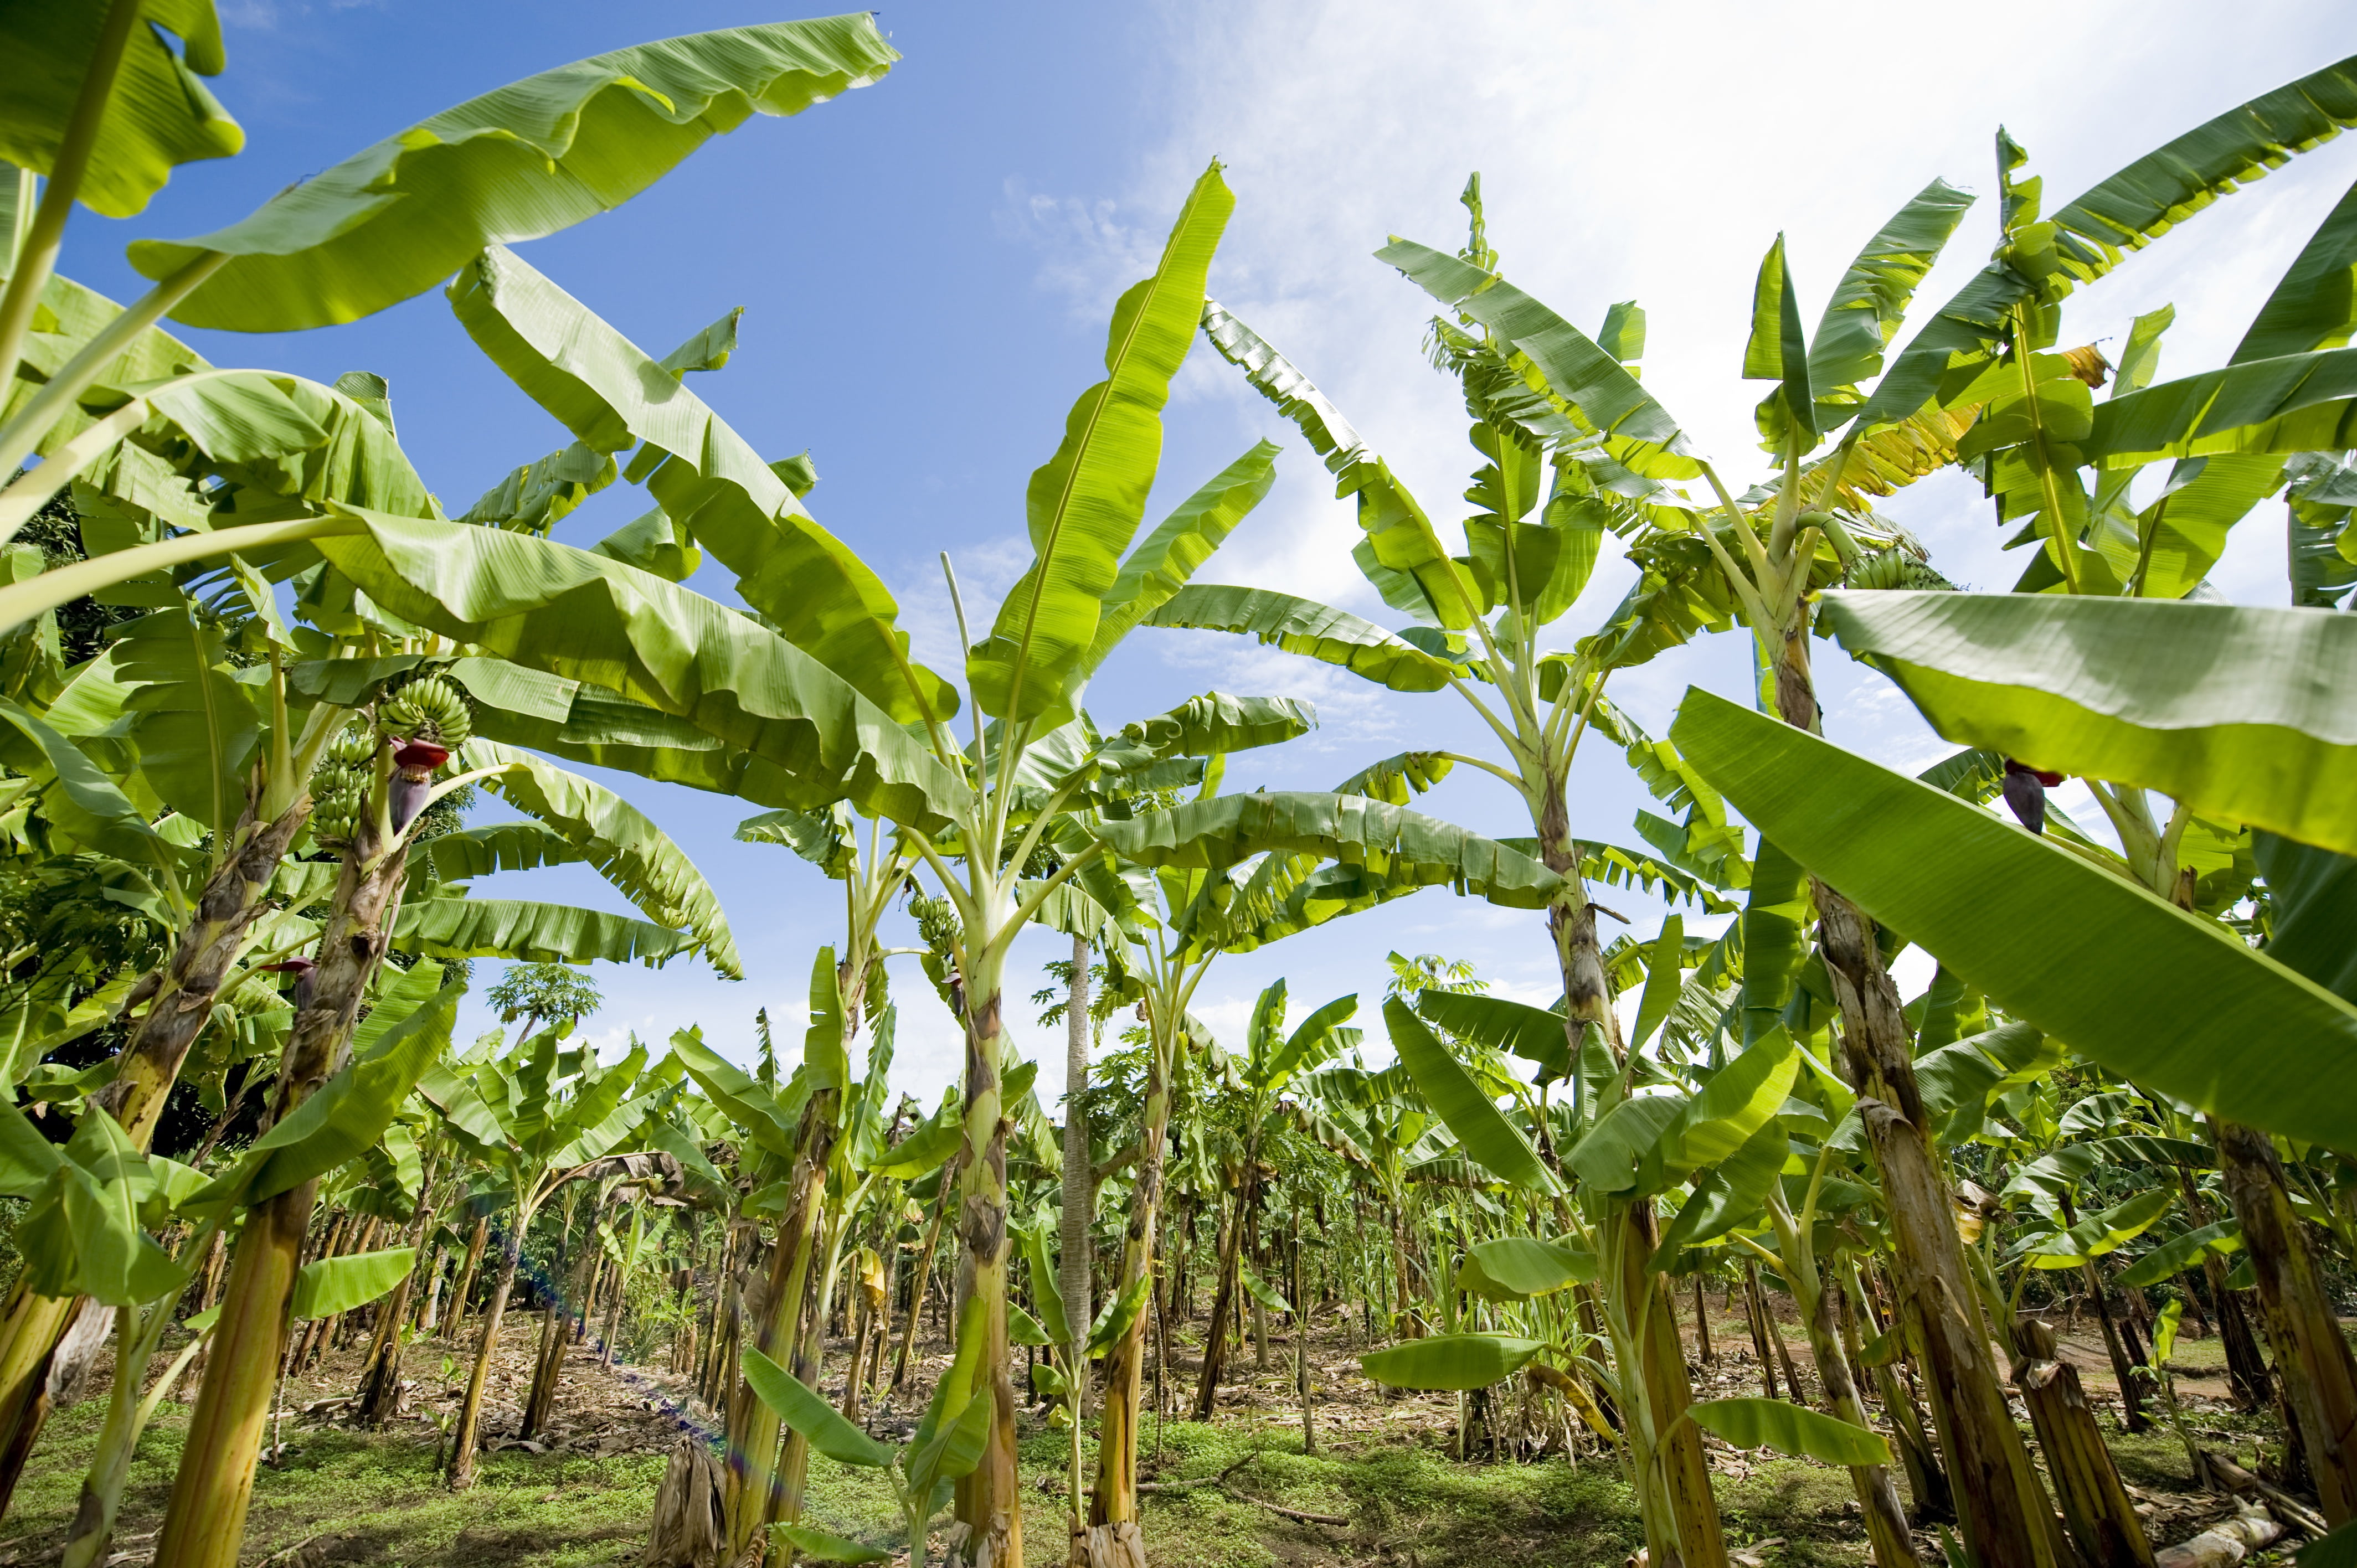 green banana tree at daytime, banana plantation, africa, agriculture